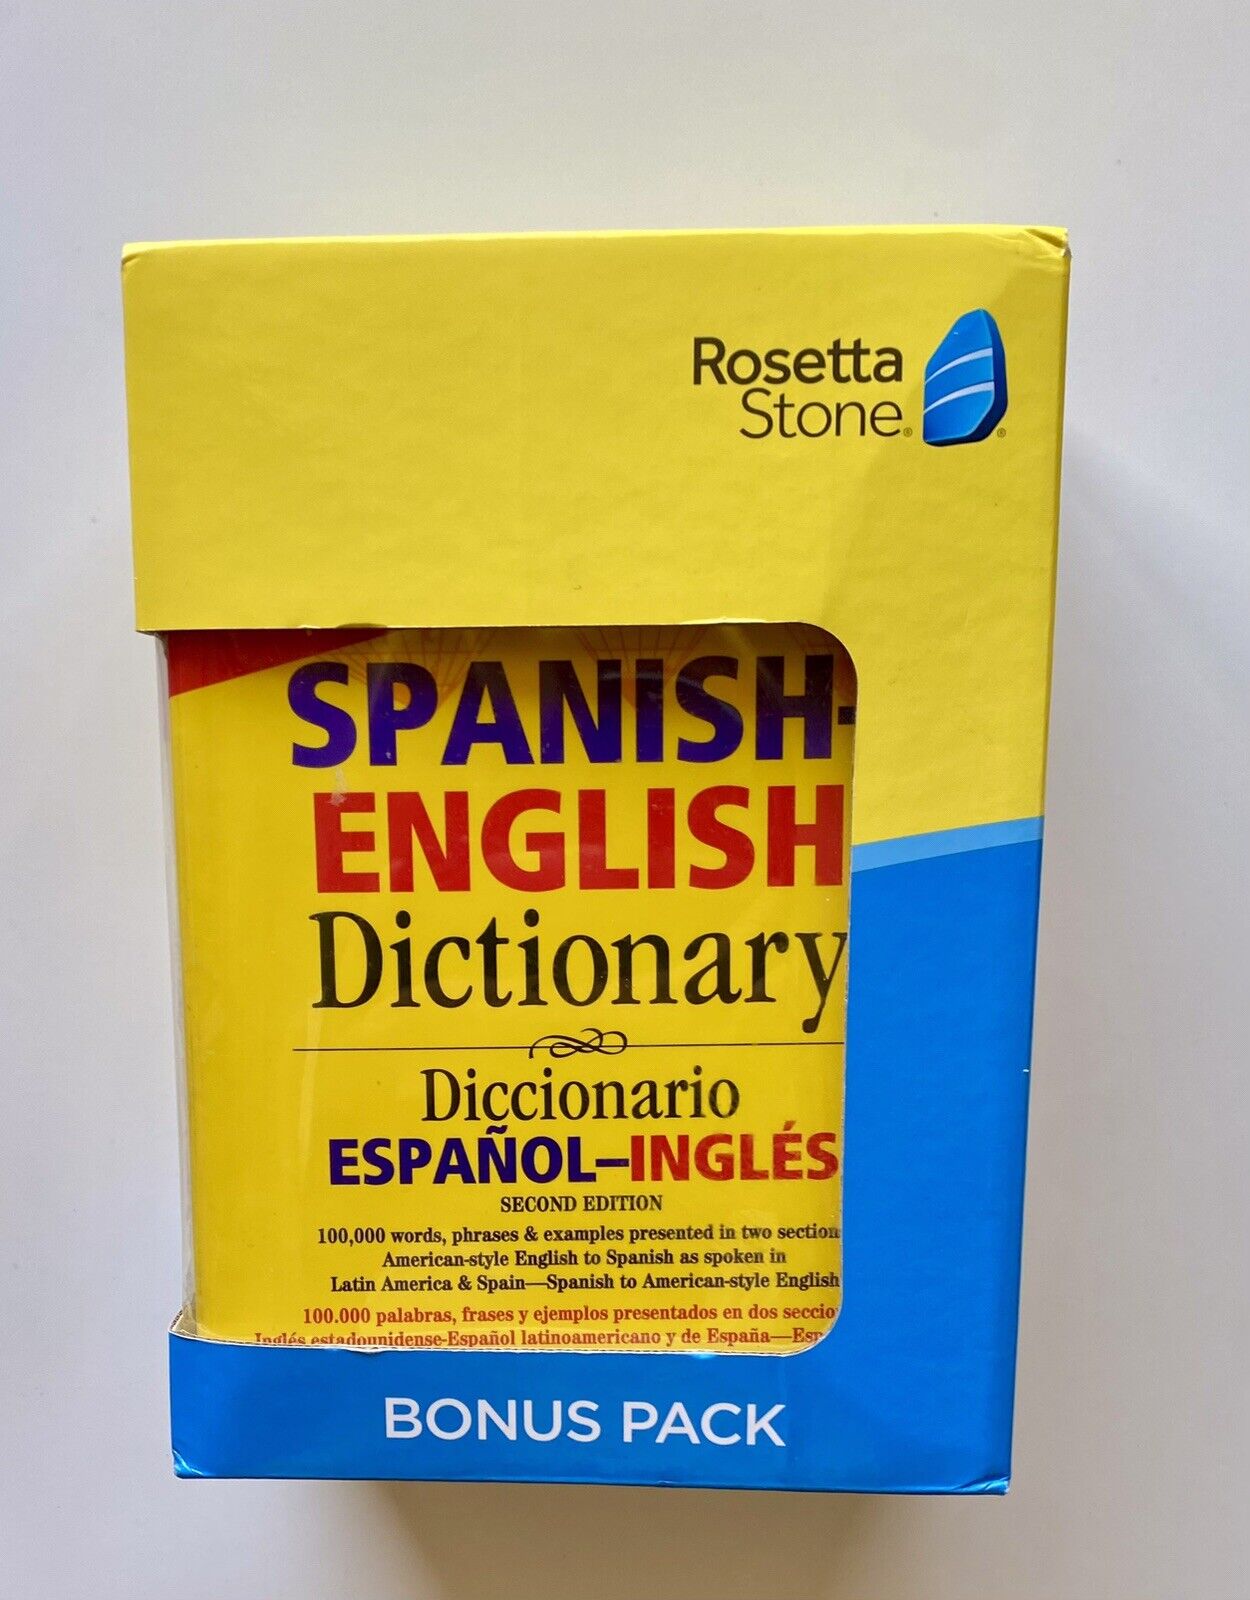 Rosetta Stone Spanish Bonus Pack With Grammar And Dictionary Books - New 